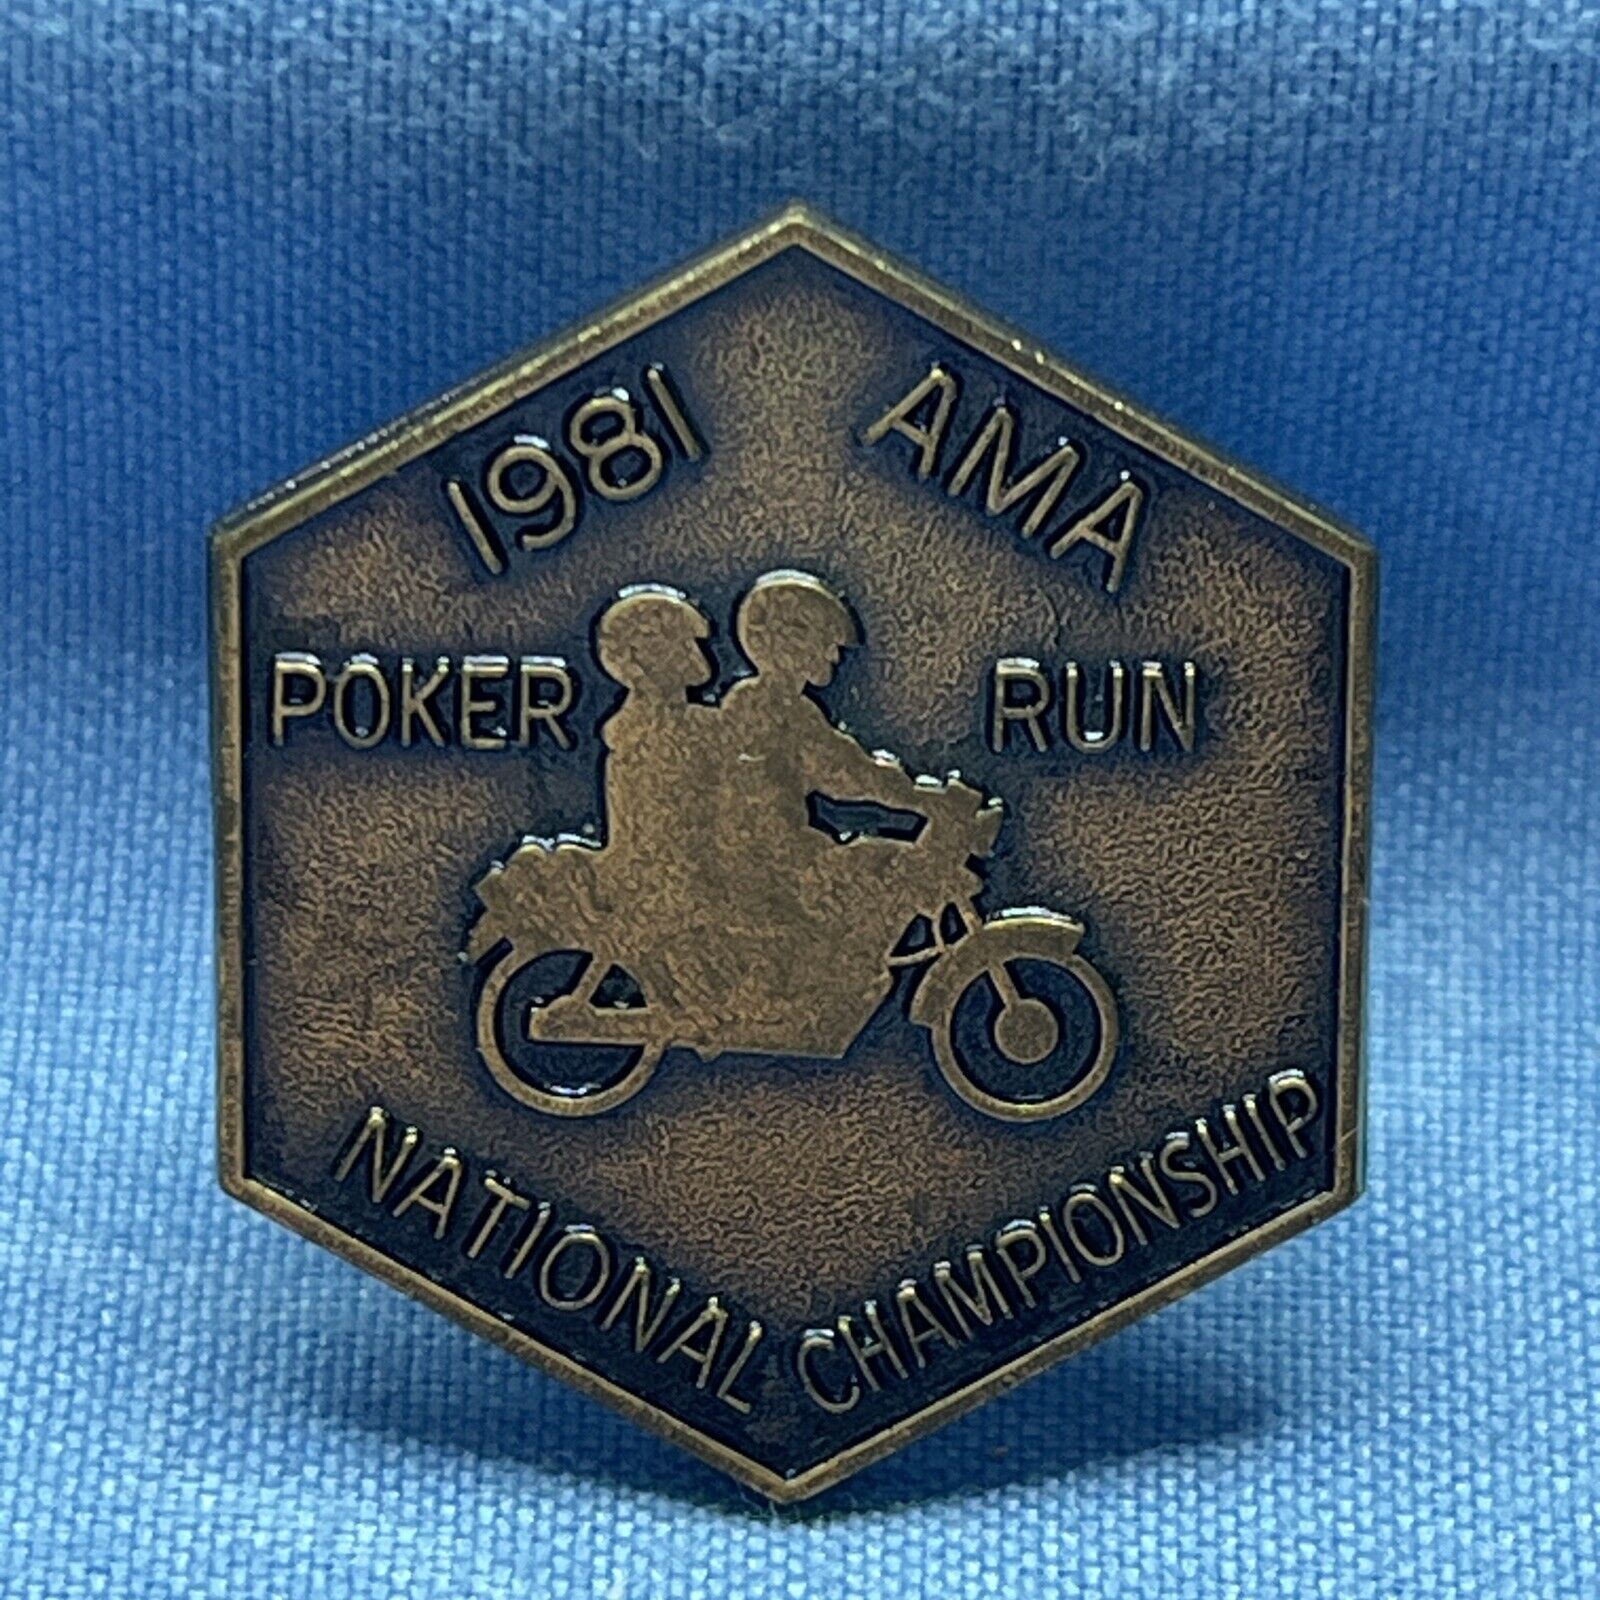 1981 NATIONAL CHAMPIONSHIP AMA POKER RUN  PIN